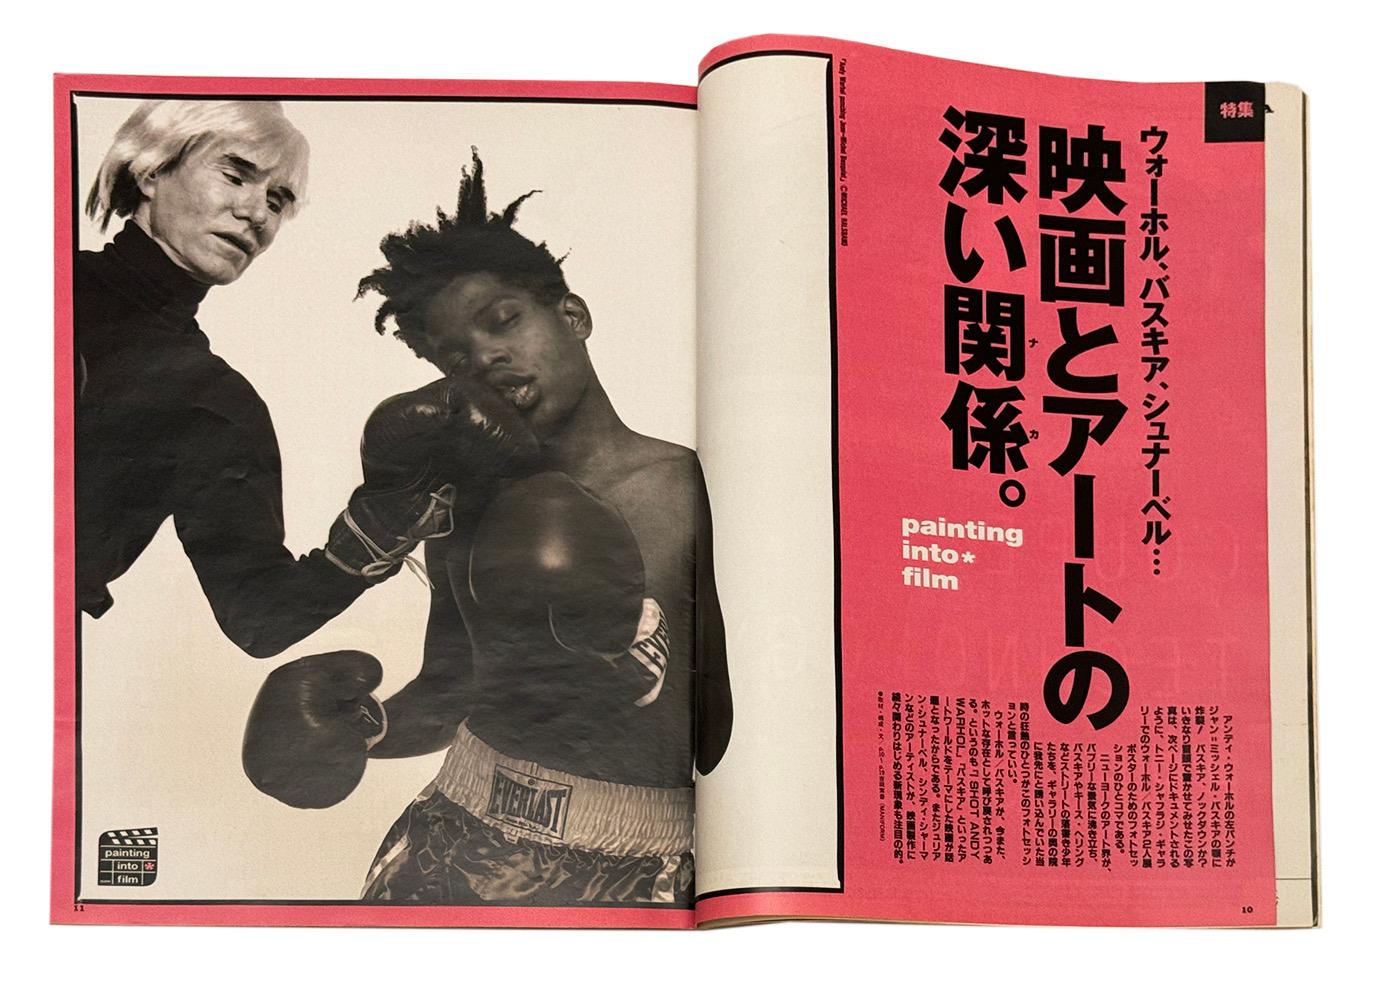 Seltenes Brutus-Magazin aus dem Jahr 1997 (Japan), das die Geschichte von Basquiat erforscht und die Veröffentlichung von Schnabels Basquiat-Film in Japan 1997 dokumentiert. Das Titelbild zeigt eine Reproduktion von Michael Halsbands berühmtem